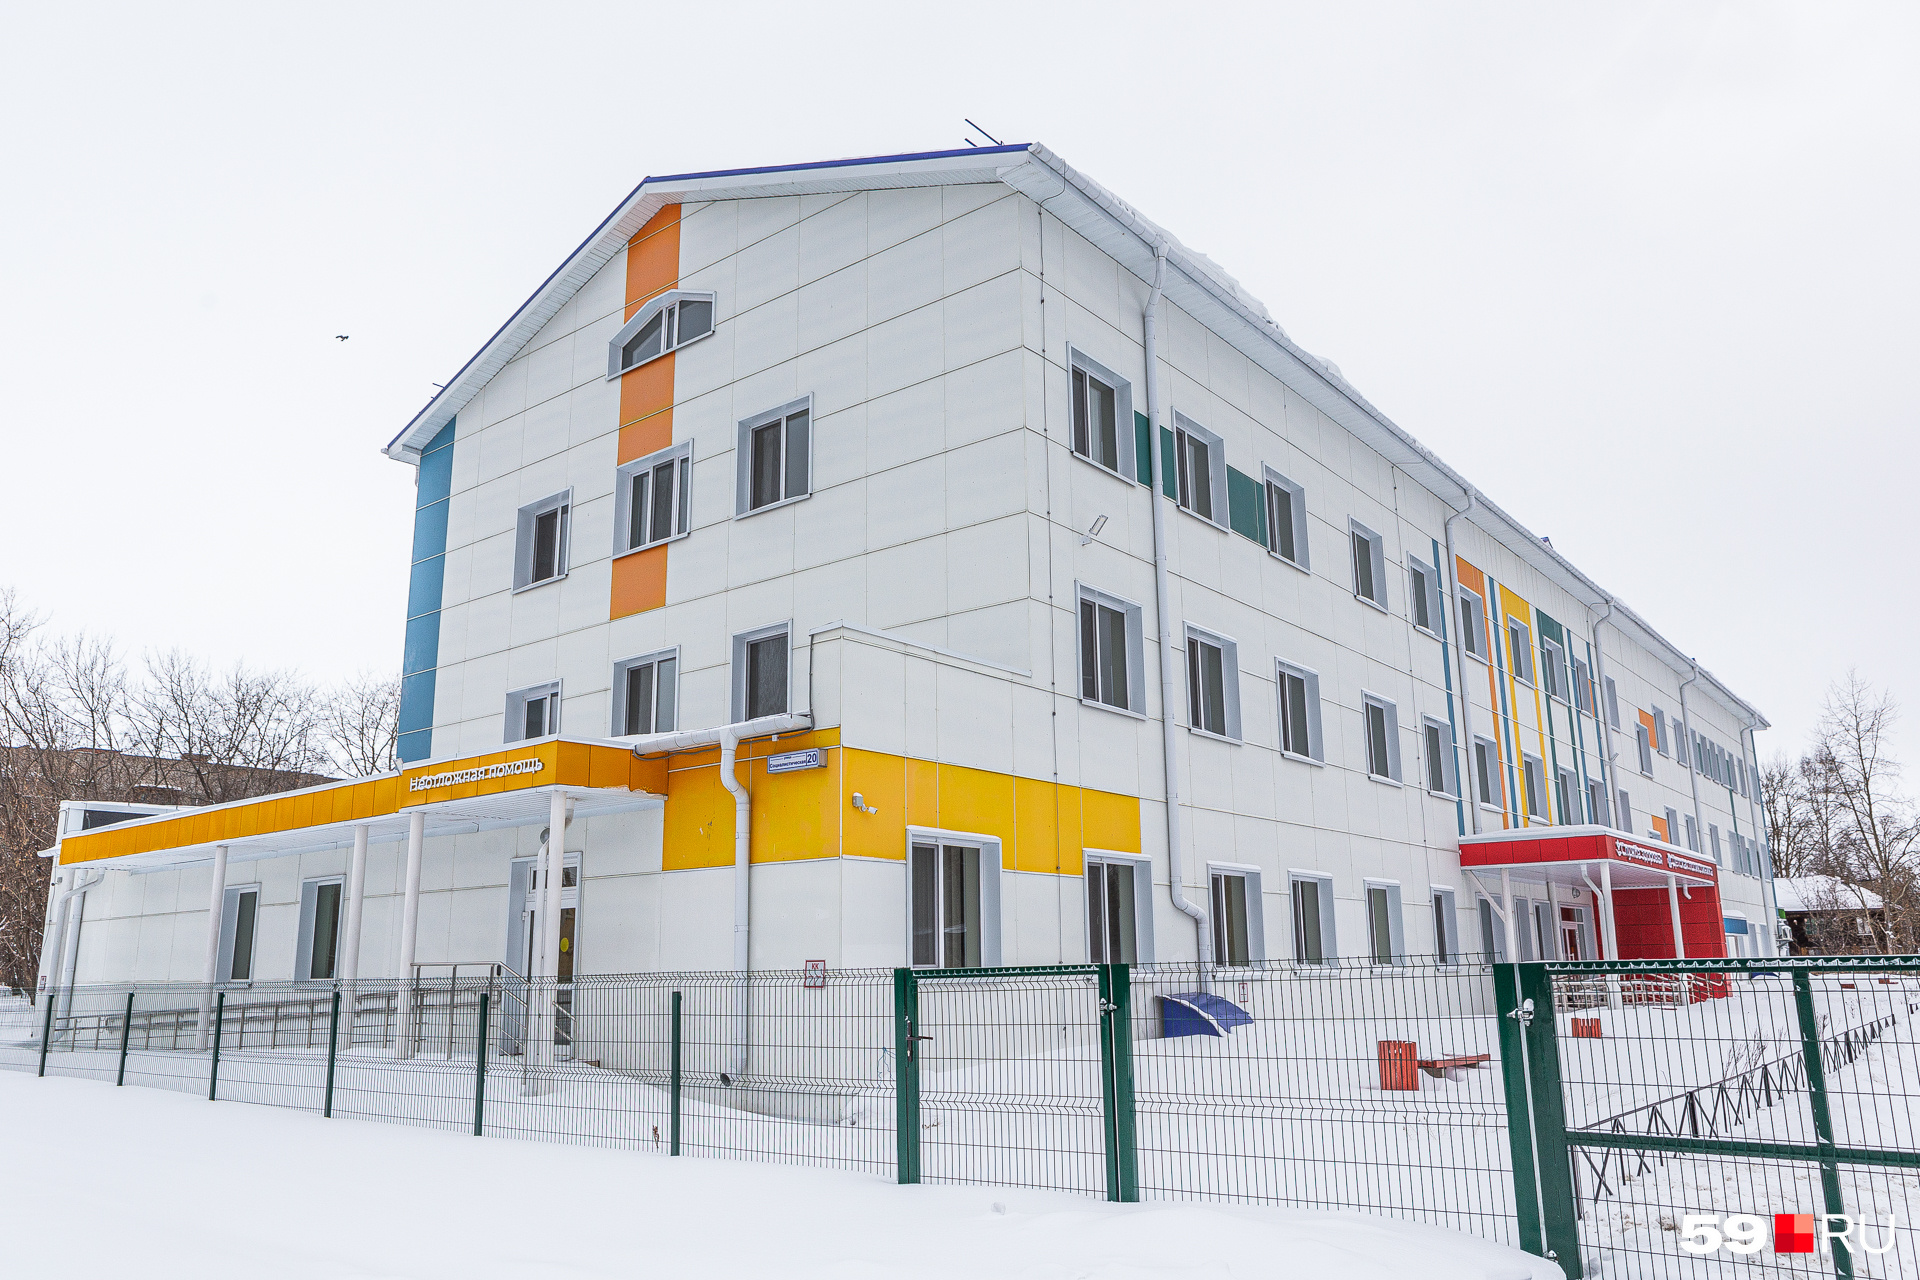 Жители Левшино давно ждут открытия новой детской больницы, но пока приема там нет